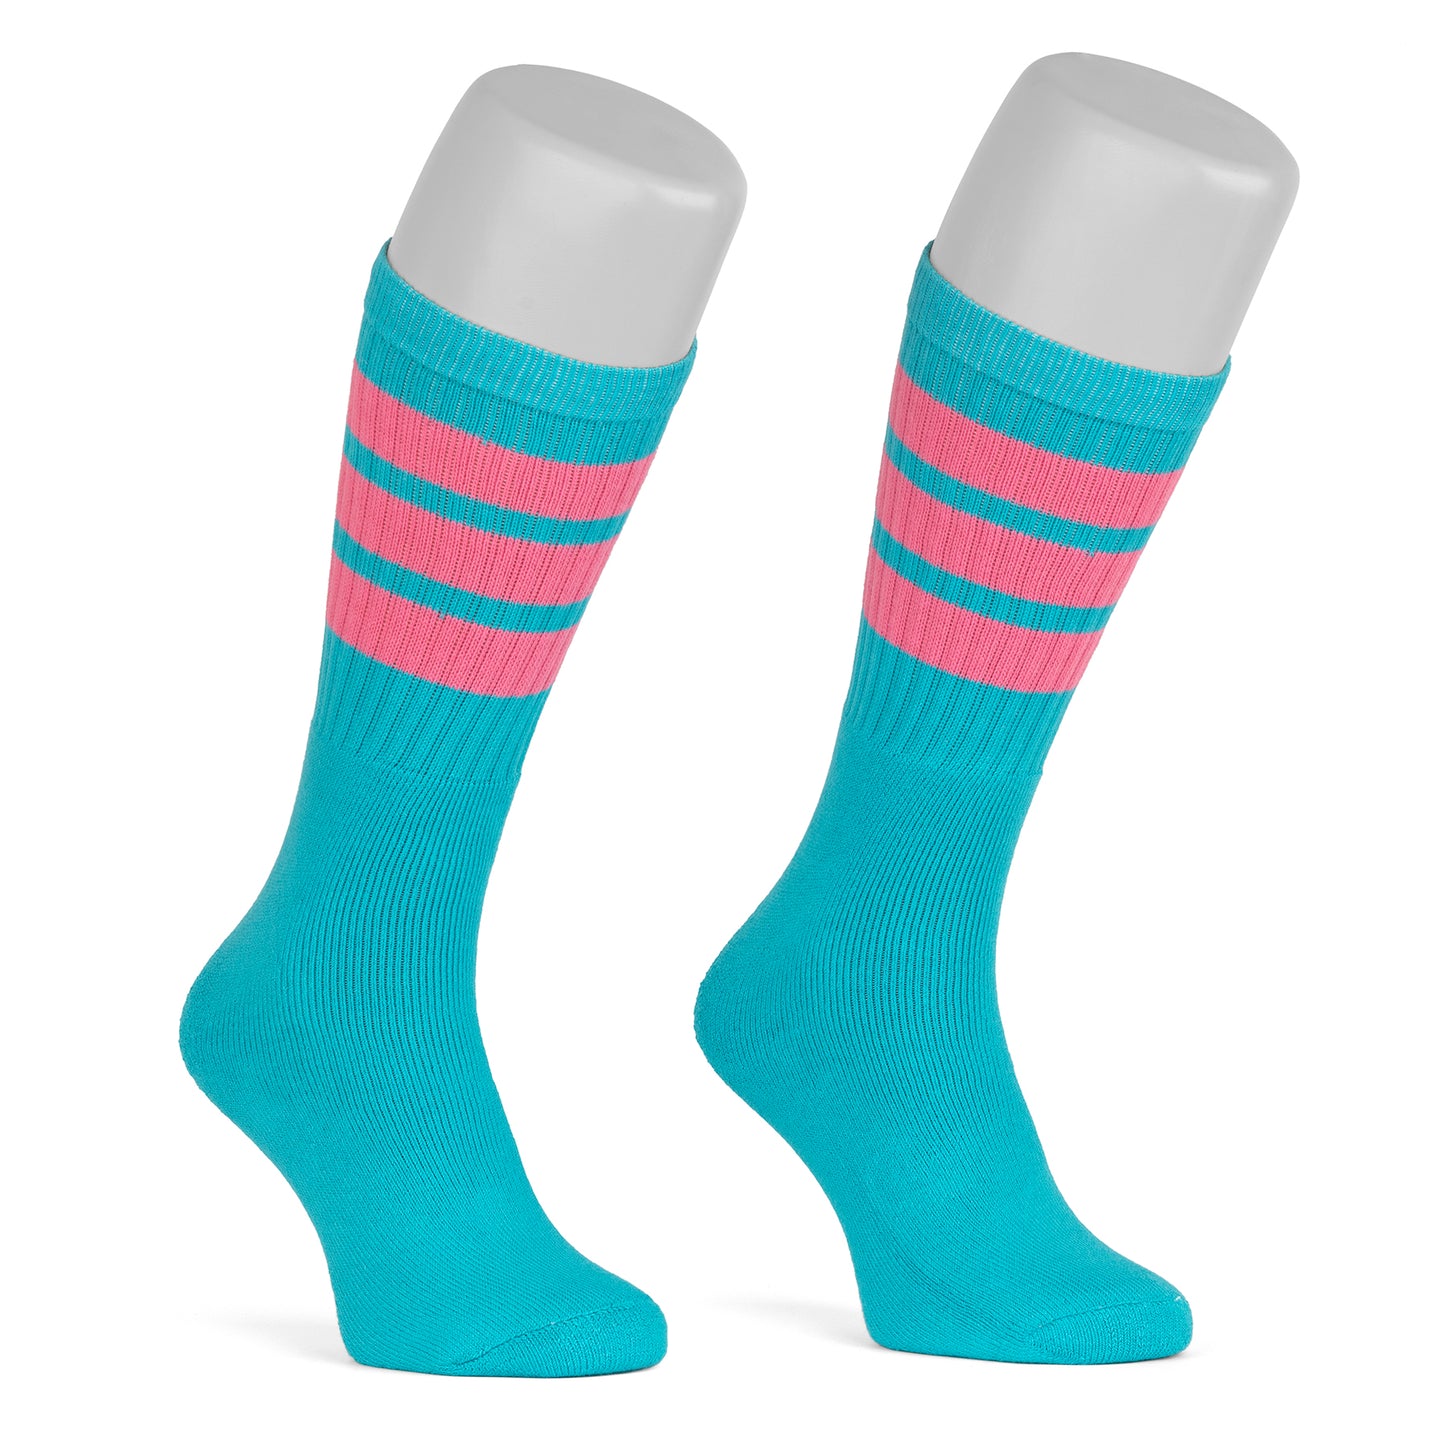 Skatersocks 19 Inch Mid Calf Tube Socks aqua - bubblegum pink striped